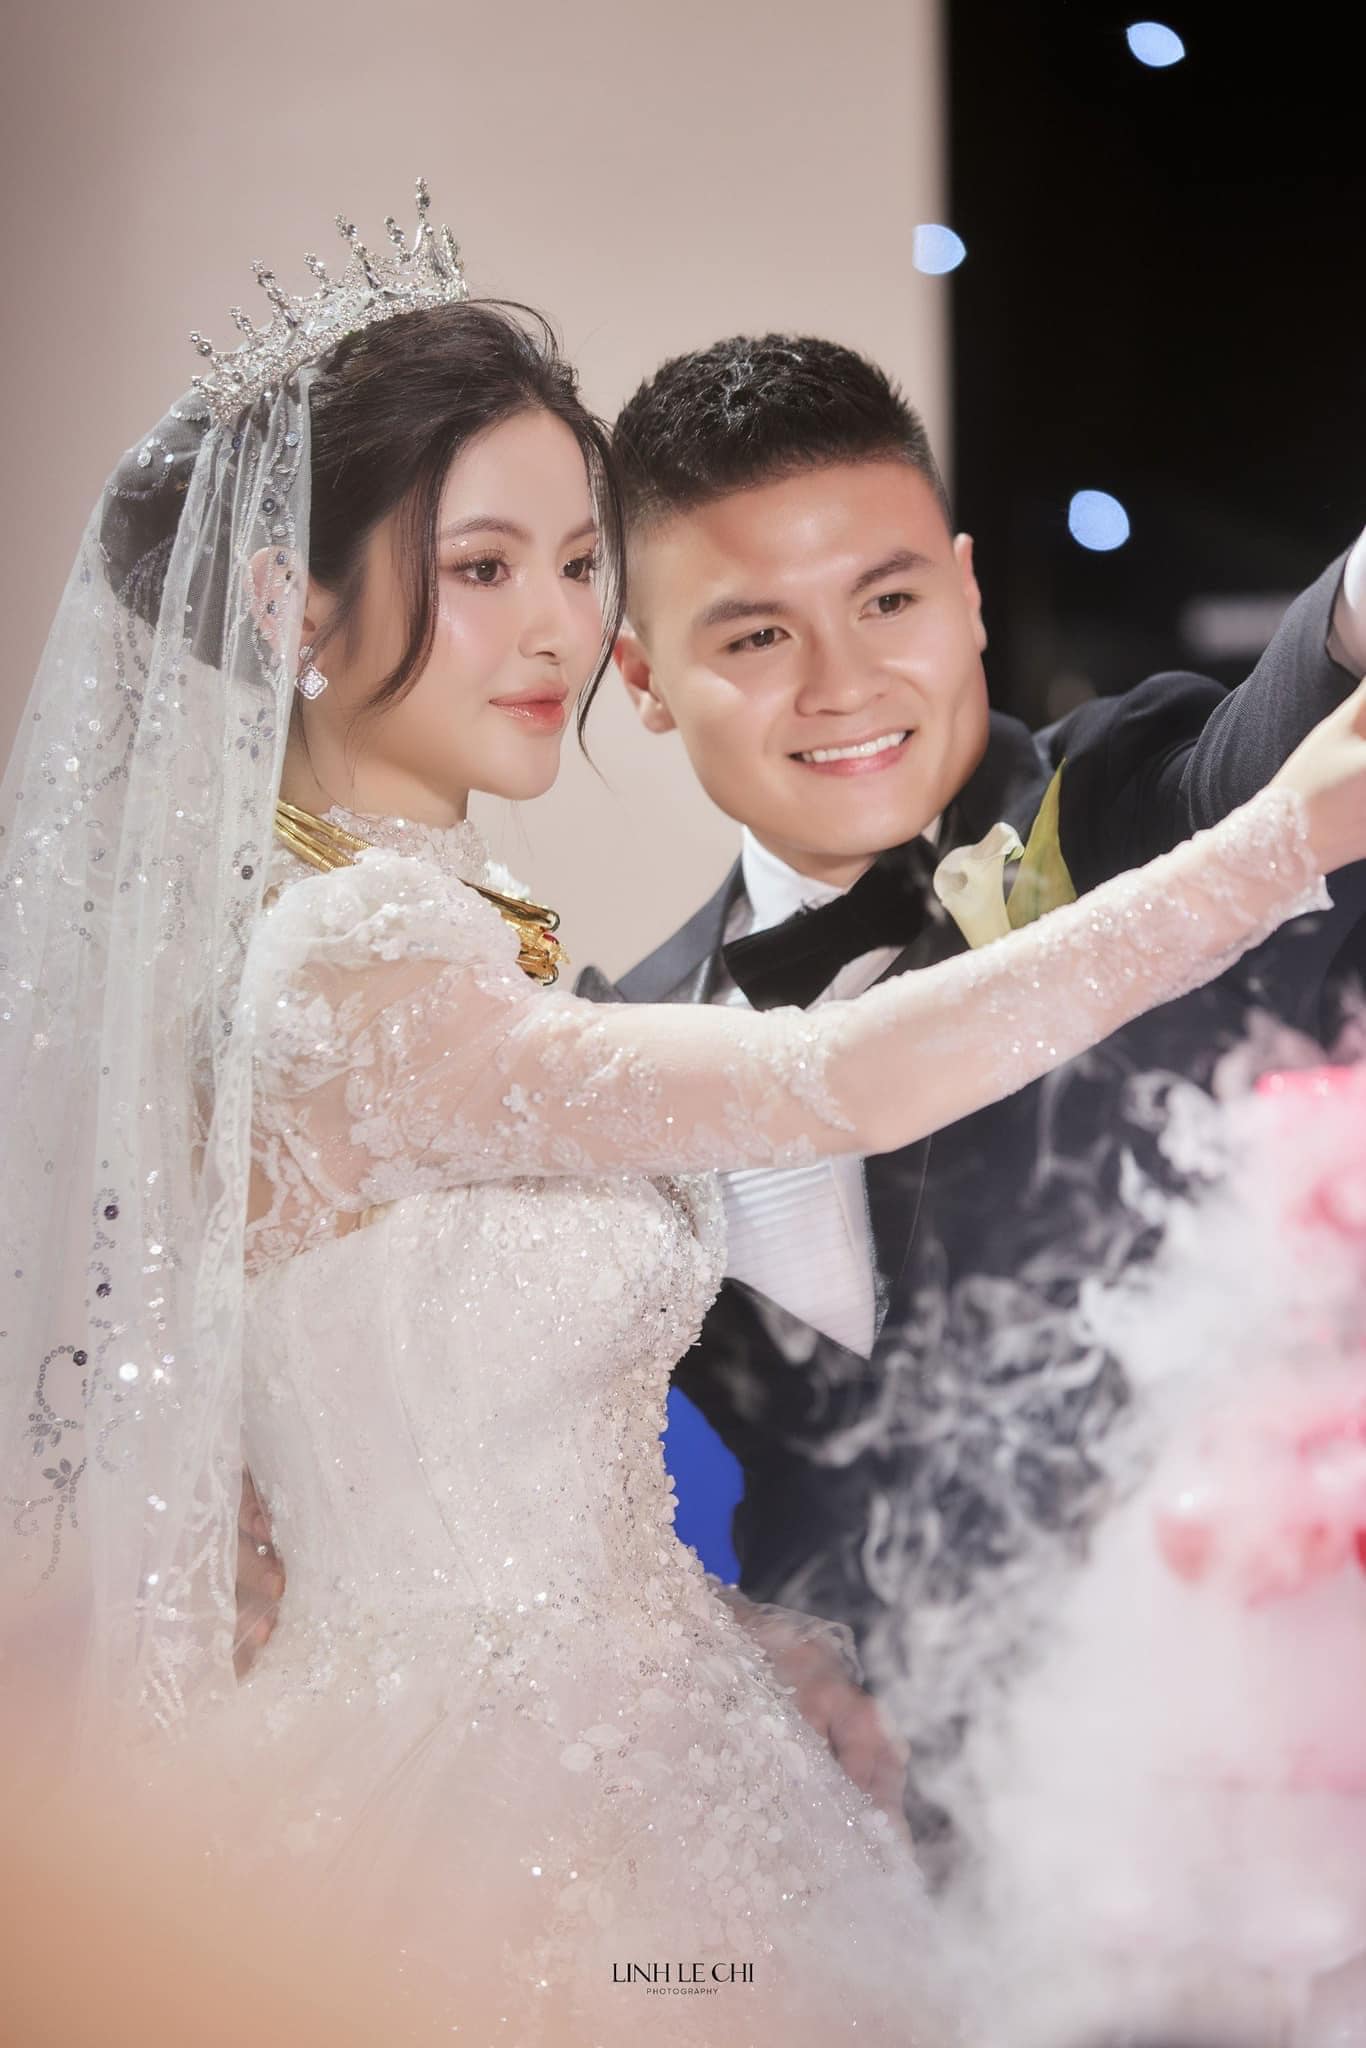 Chu Thanh Huyền phơi bày sự thật luôn che giấu Quang Hải sau đám cưới, uất ức về thời điểm yêu mà giấu nhẹm - ảnh 1